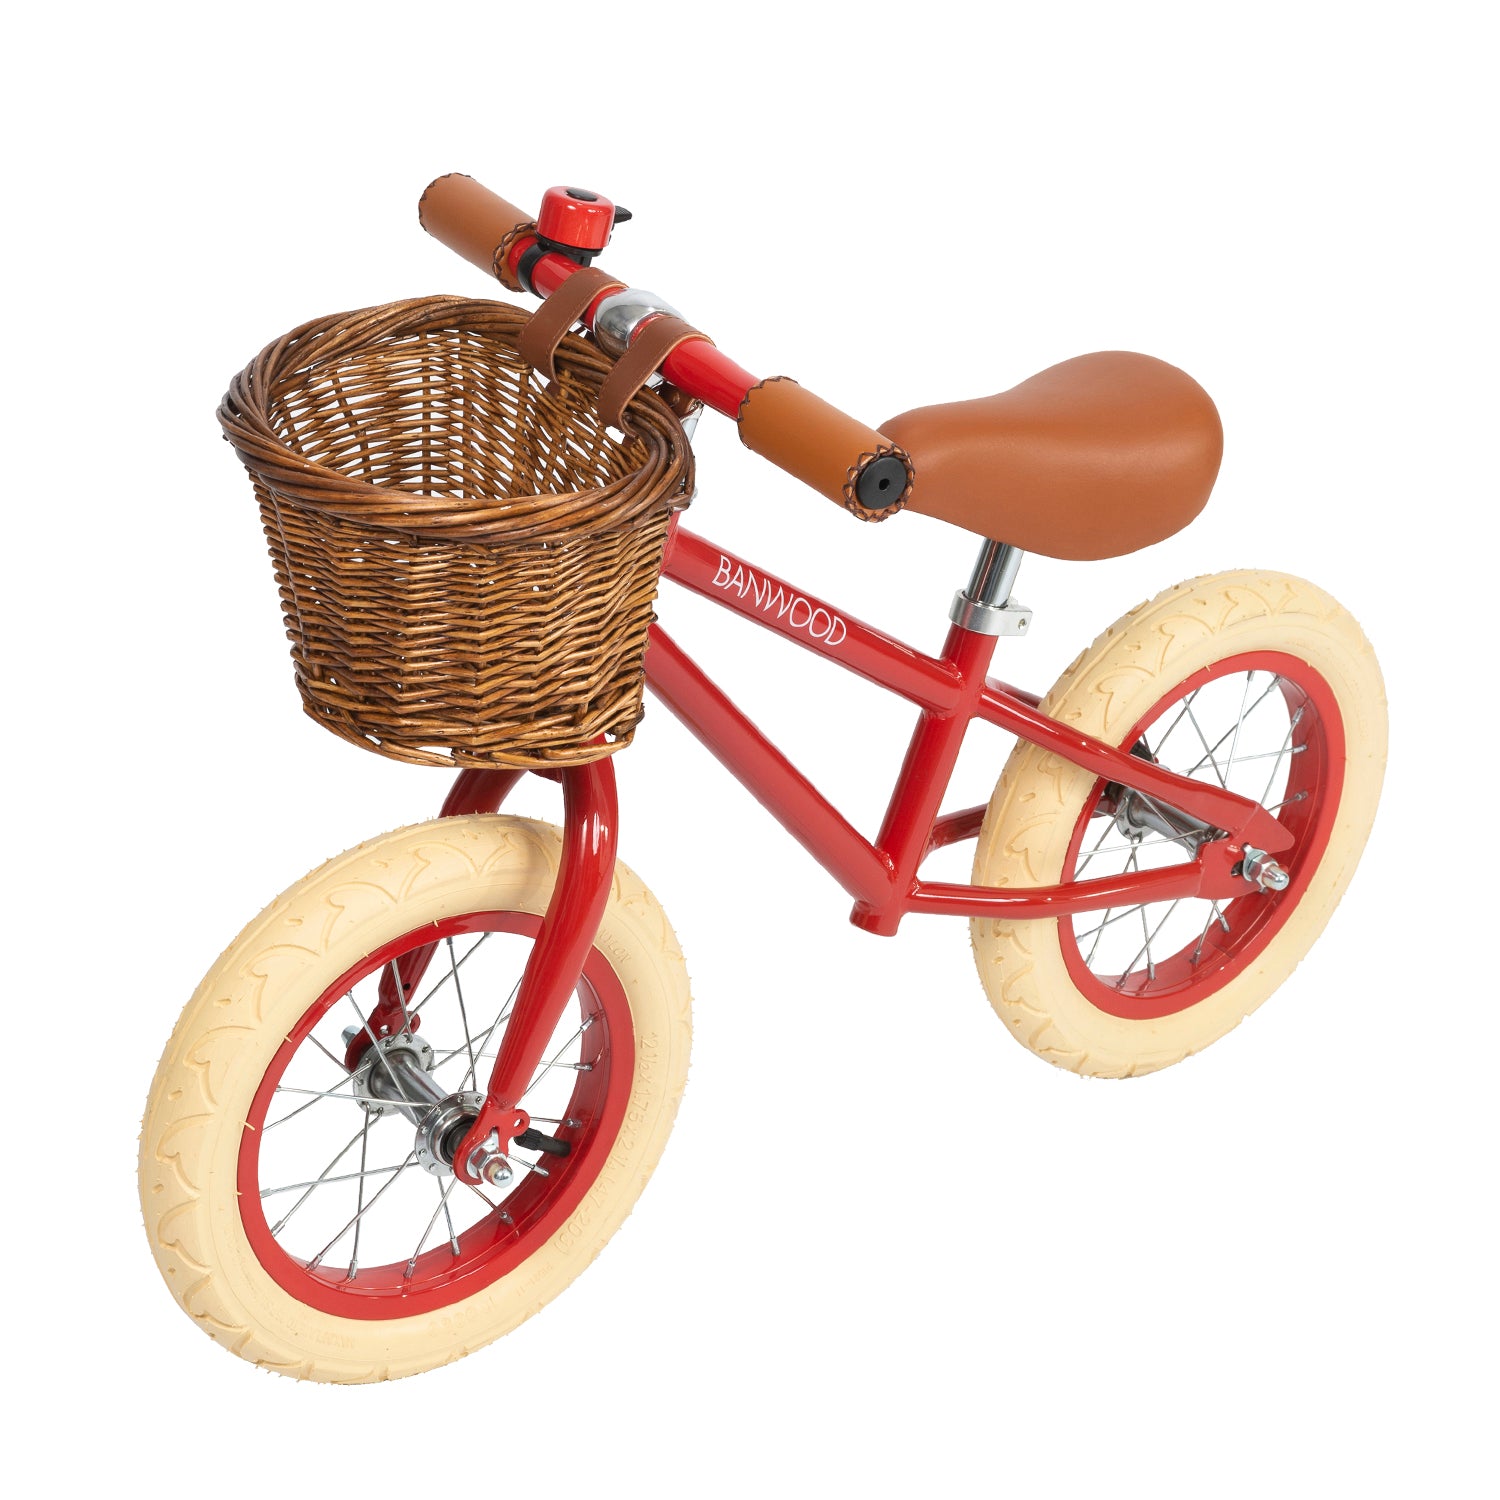 Ontdek deze toffe Banwood loopfiets vintage red! Deze toffe loopfiets voor jongens en meisjes heeft een mooie, matte rode kleur. Deze fiets ie gemaakt om lang mee te gaan en je kind zal er dan ook heel veel plezier mee beleven! VanZus